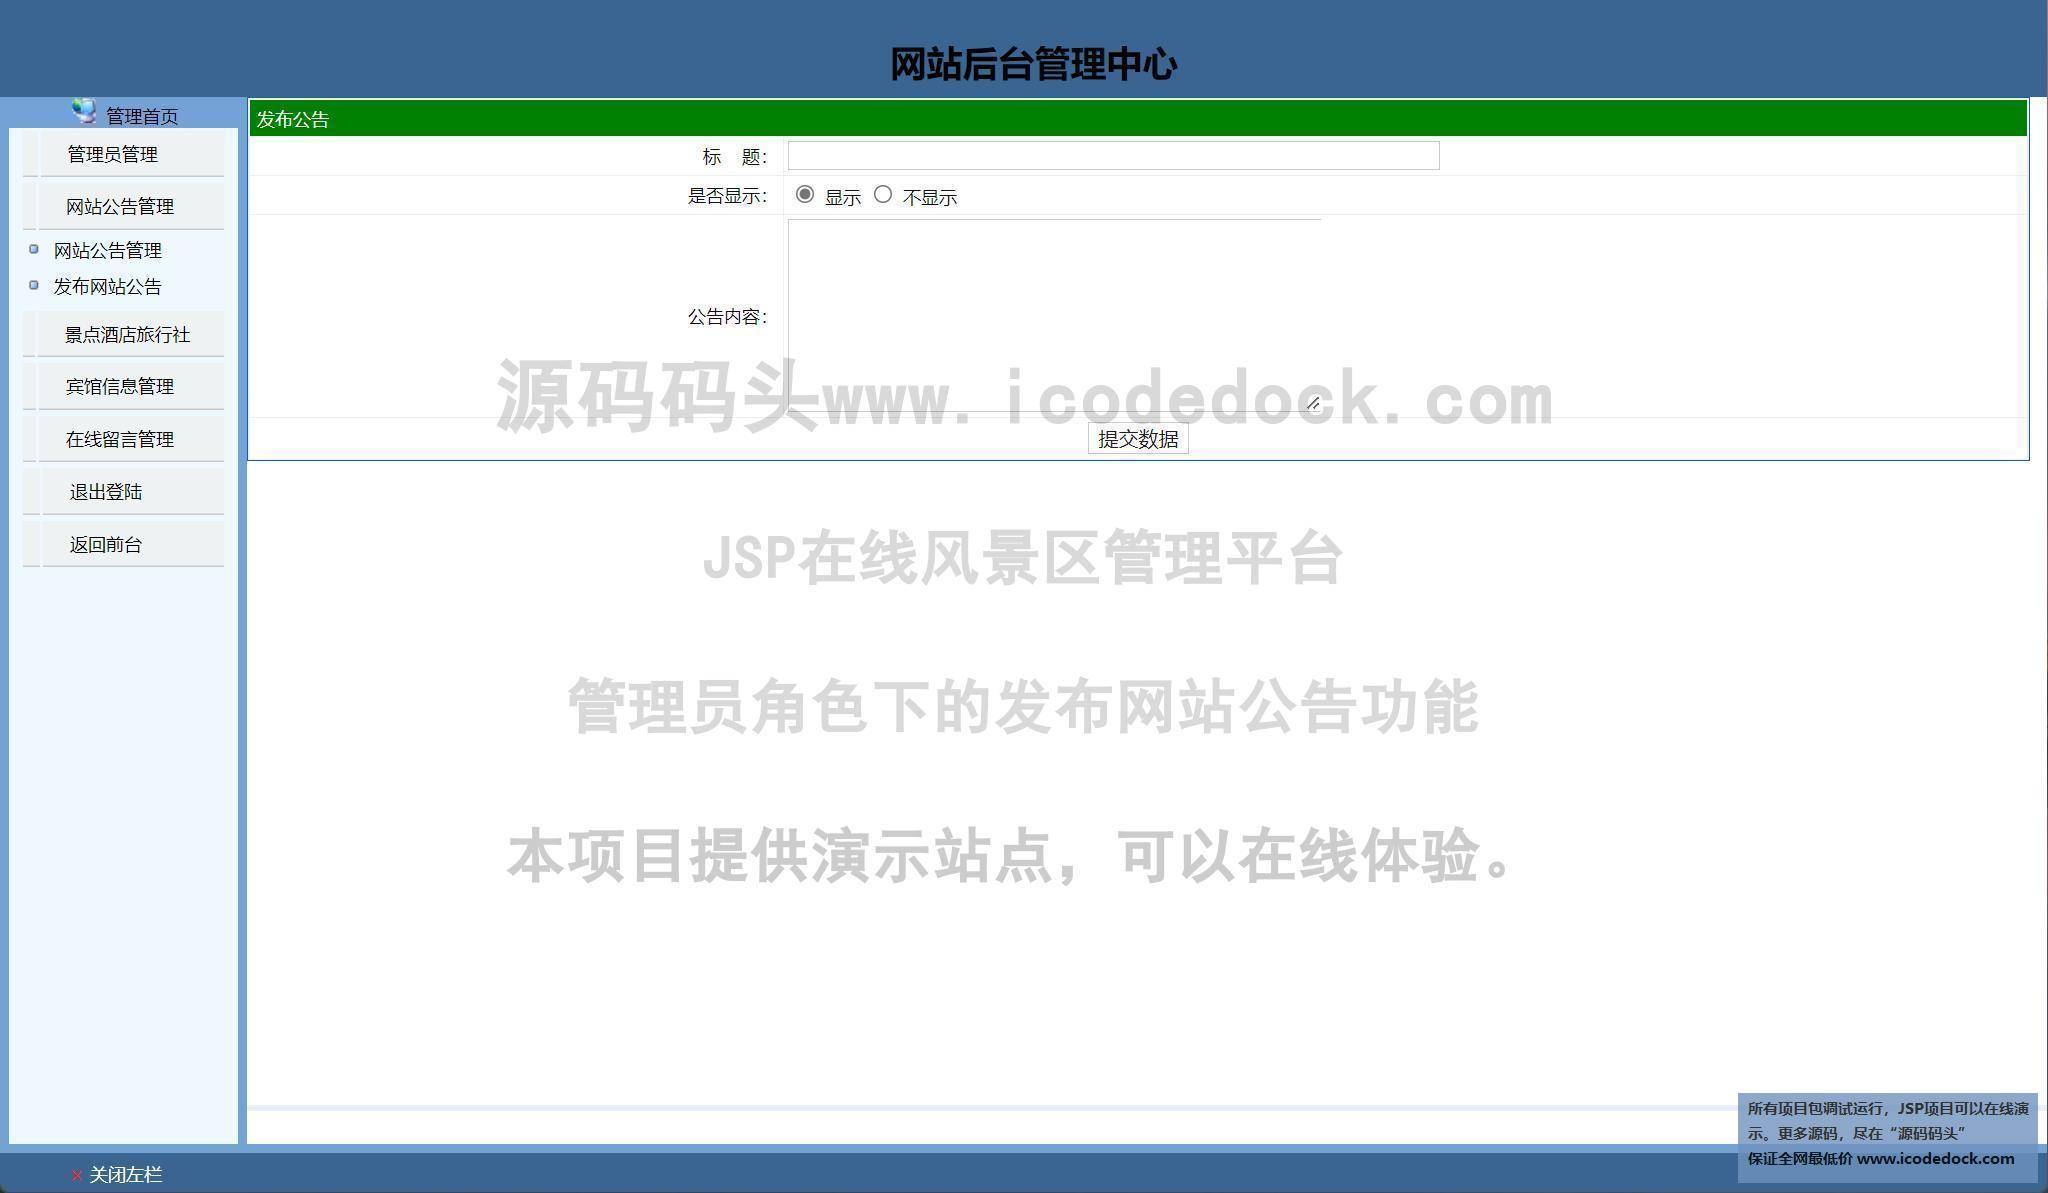 源码码头-JSP在线风景区管理平台-管理员角色-发布网站公告